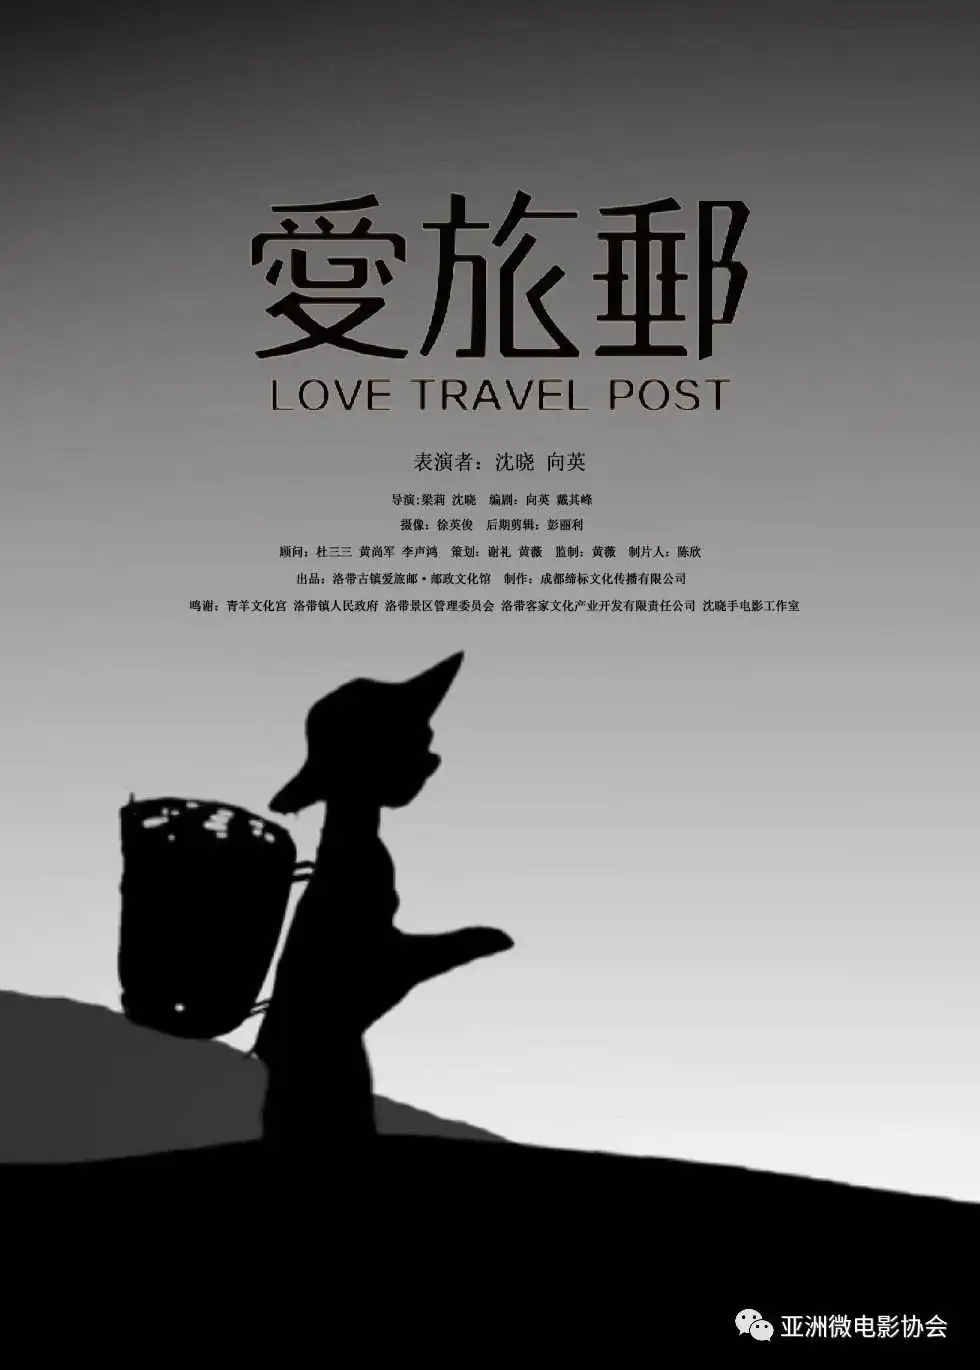 祝贺缔标文化推送的洛带古镇作品《爱·旅·邮》喜获亚洲微电影协会2021年  image